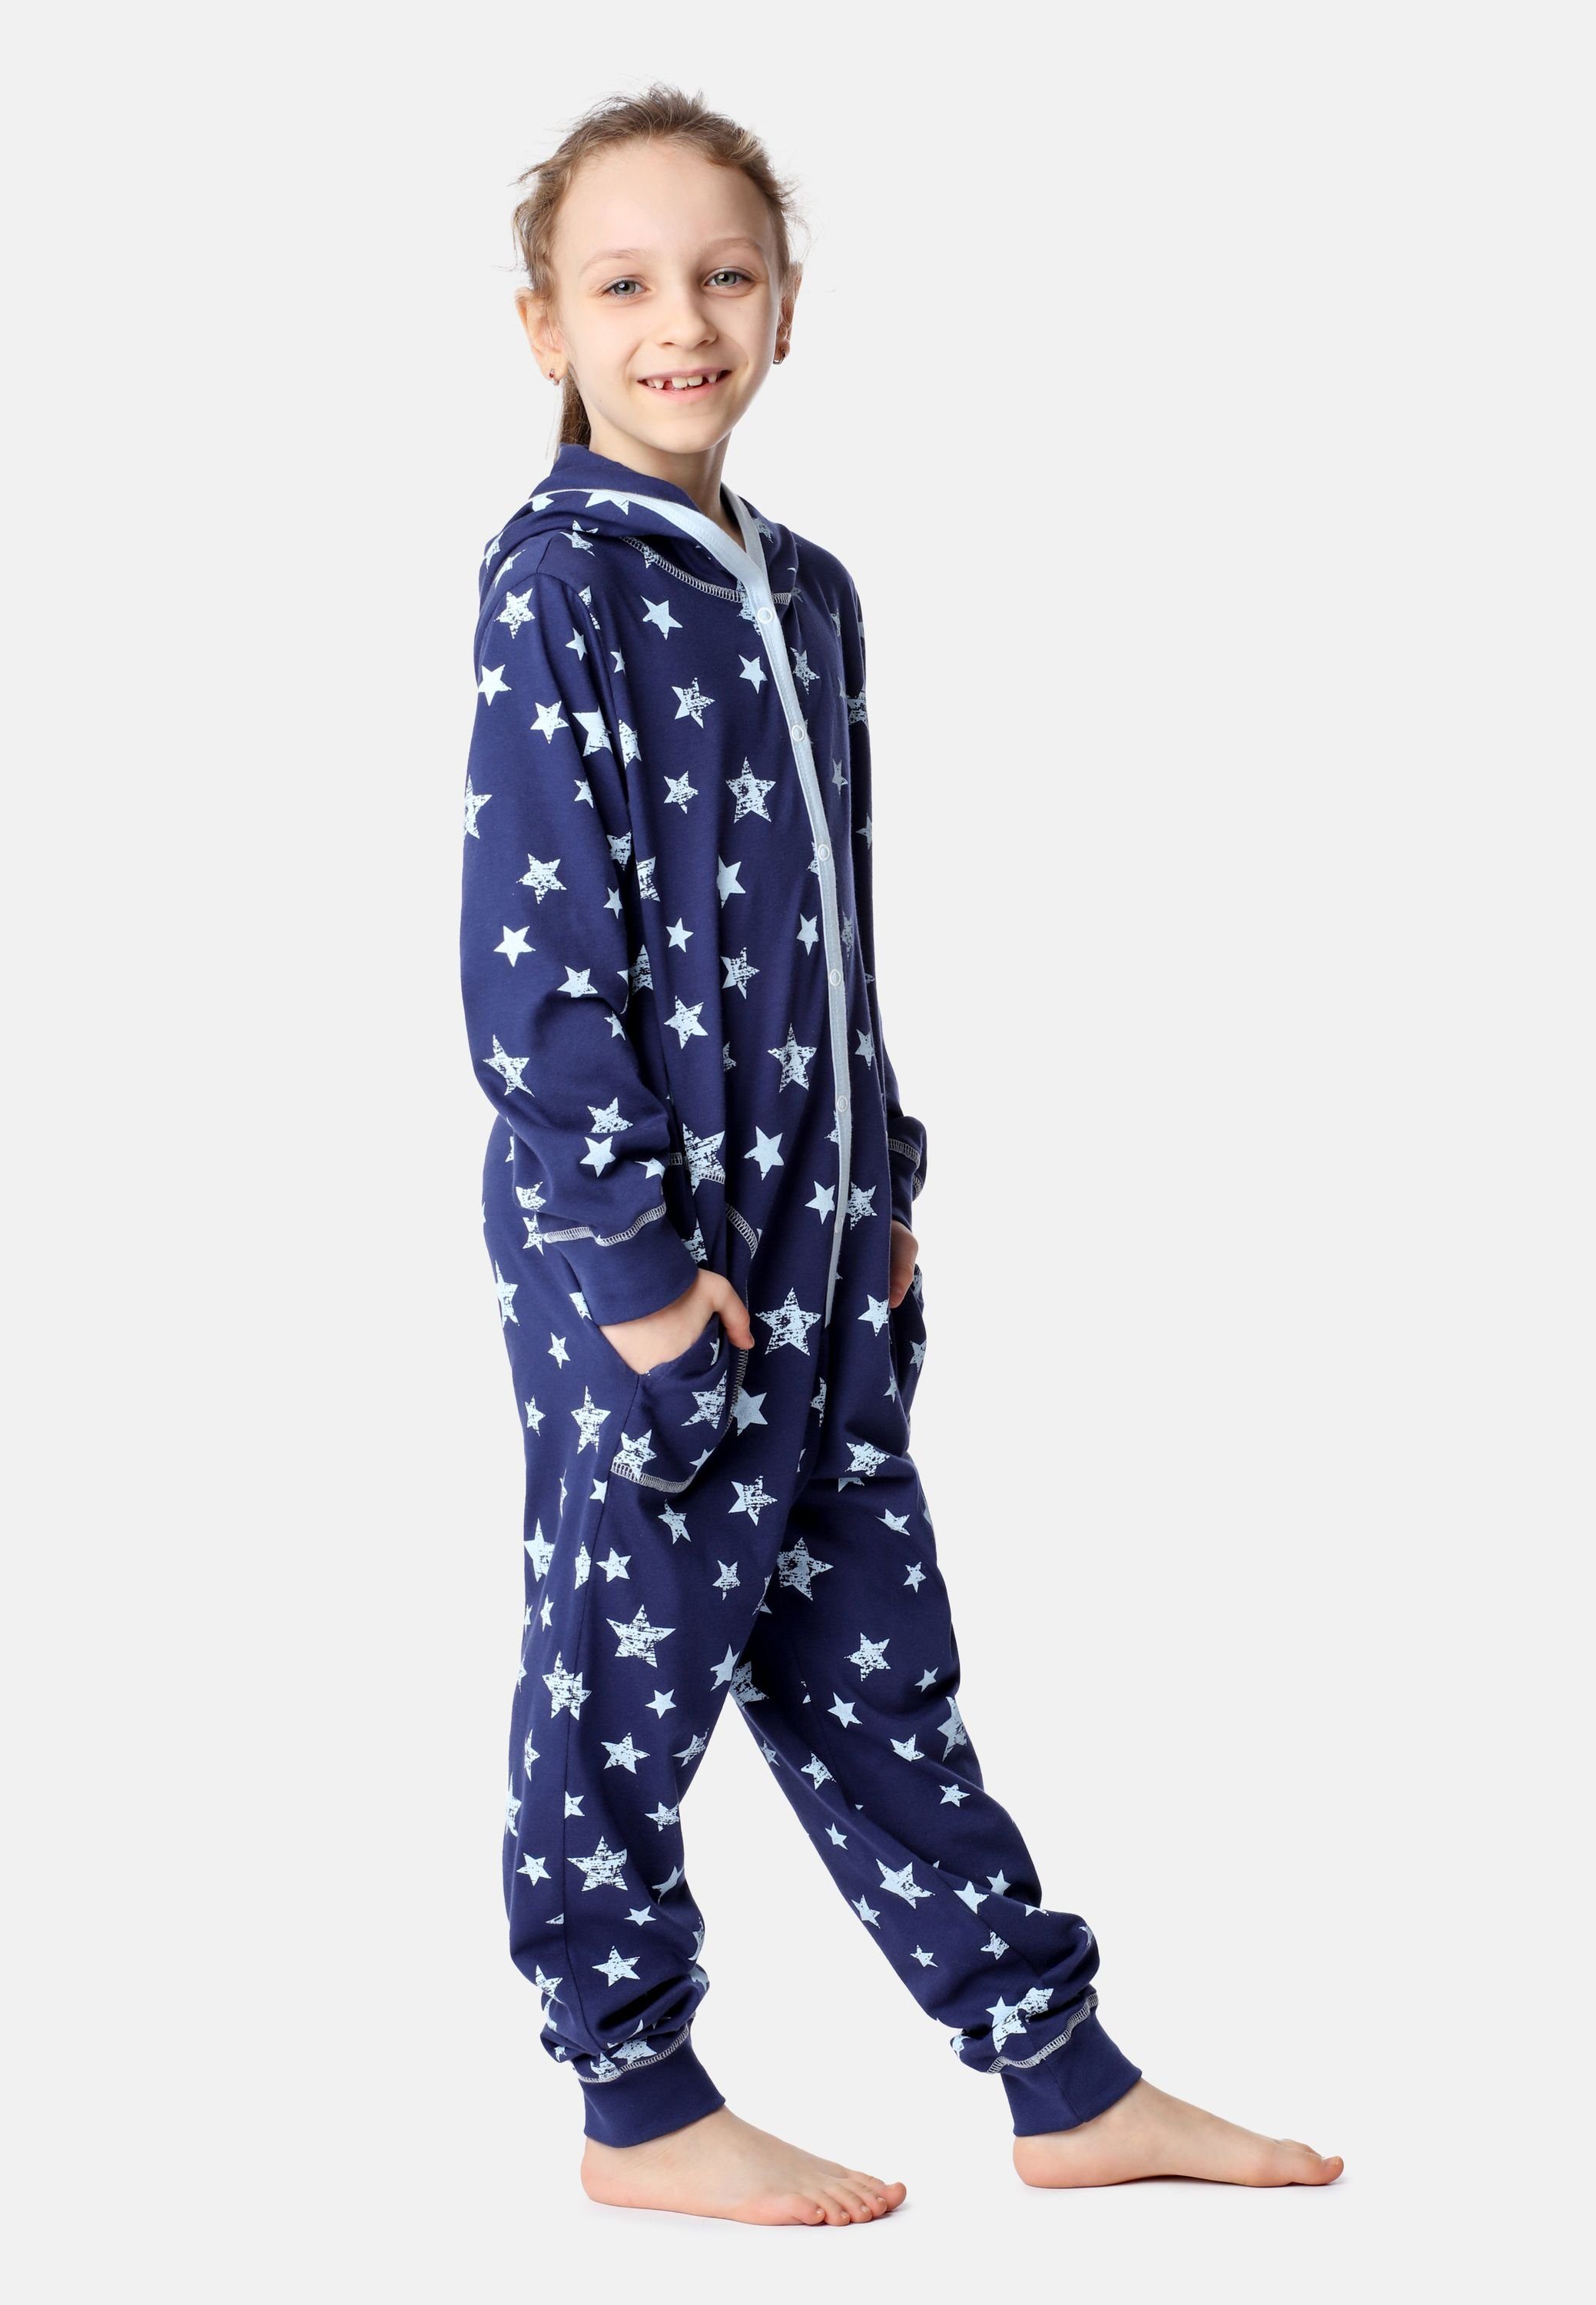 Marineblau Schlafanzug Mädchen Kapuze Merry mit Style Sterne Schlafoverall MS10-223